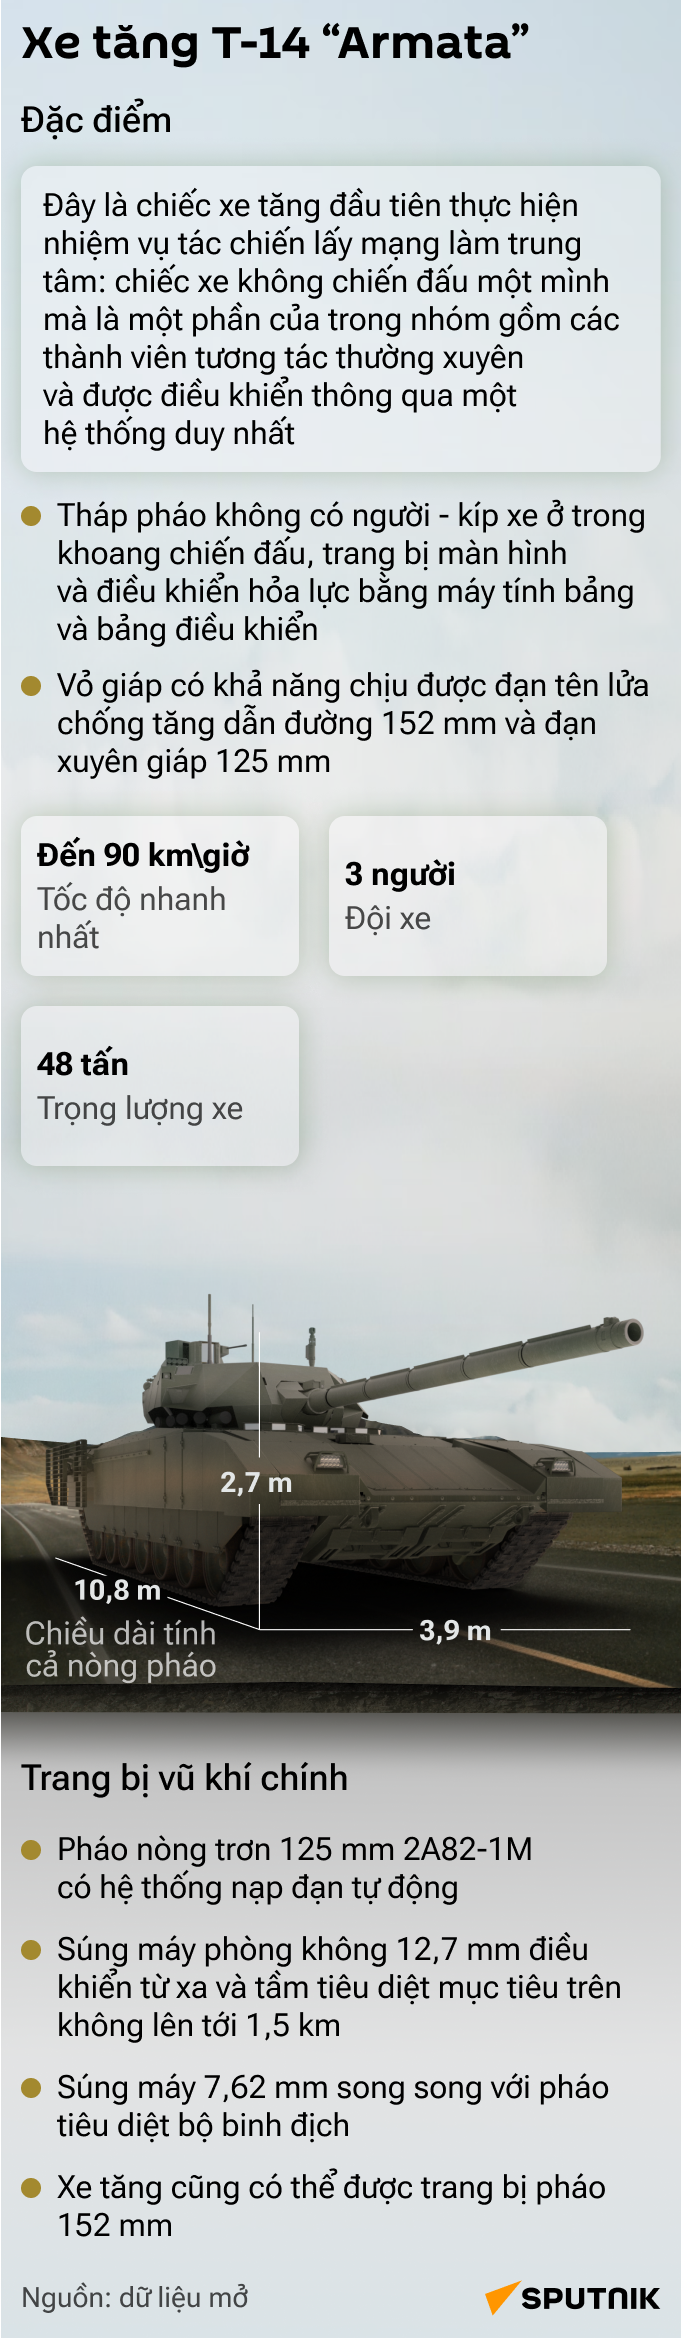 Новейший российский танк «Армата» - Sputnik Việt Nam